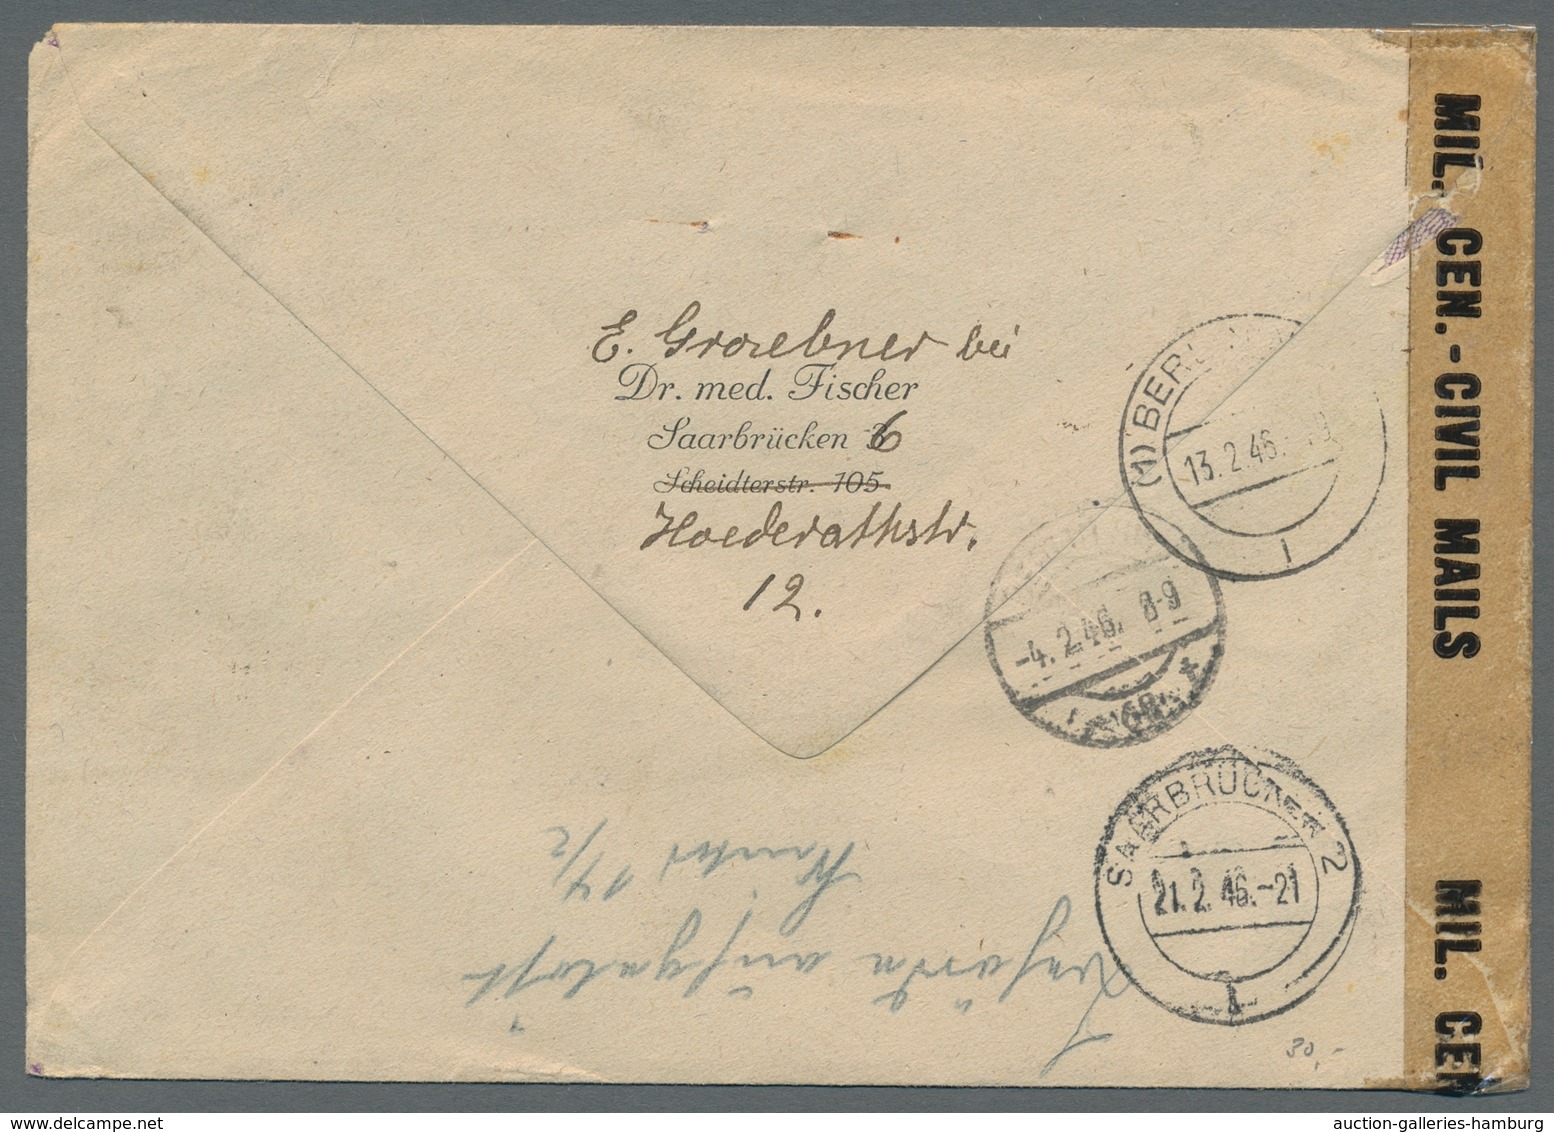 Saarland und OPD Saarbrücken: 1945-1958, Bestand von 30 meist markenlosen Belegen. Besonders zu erwä